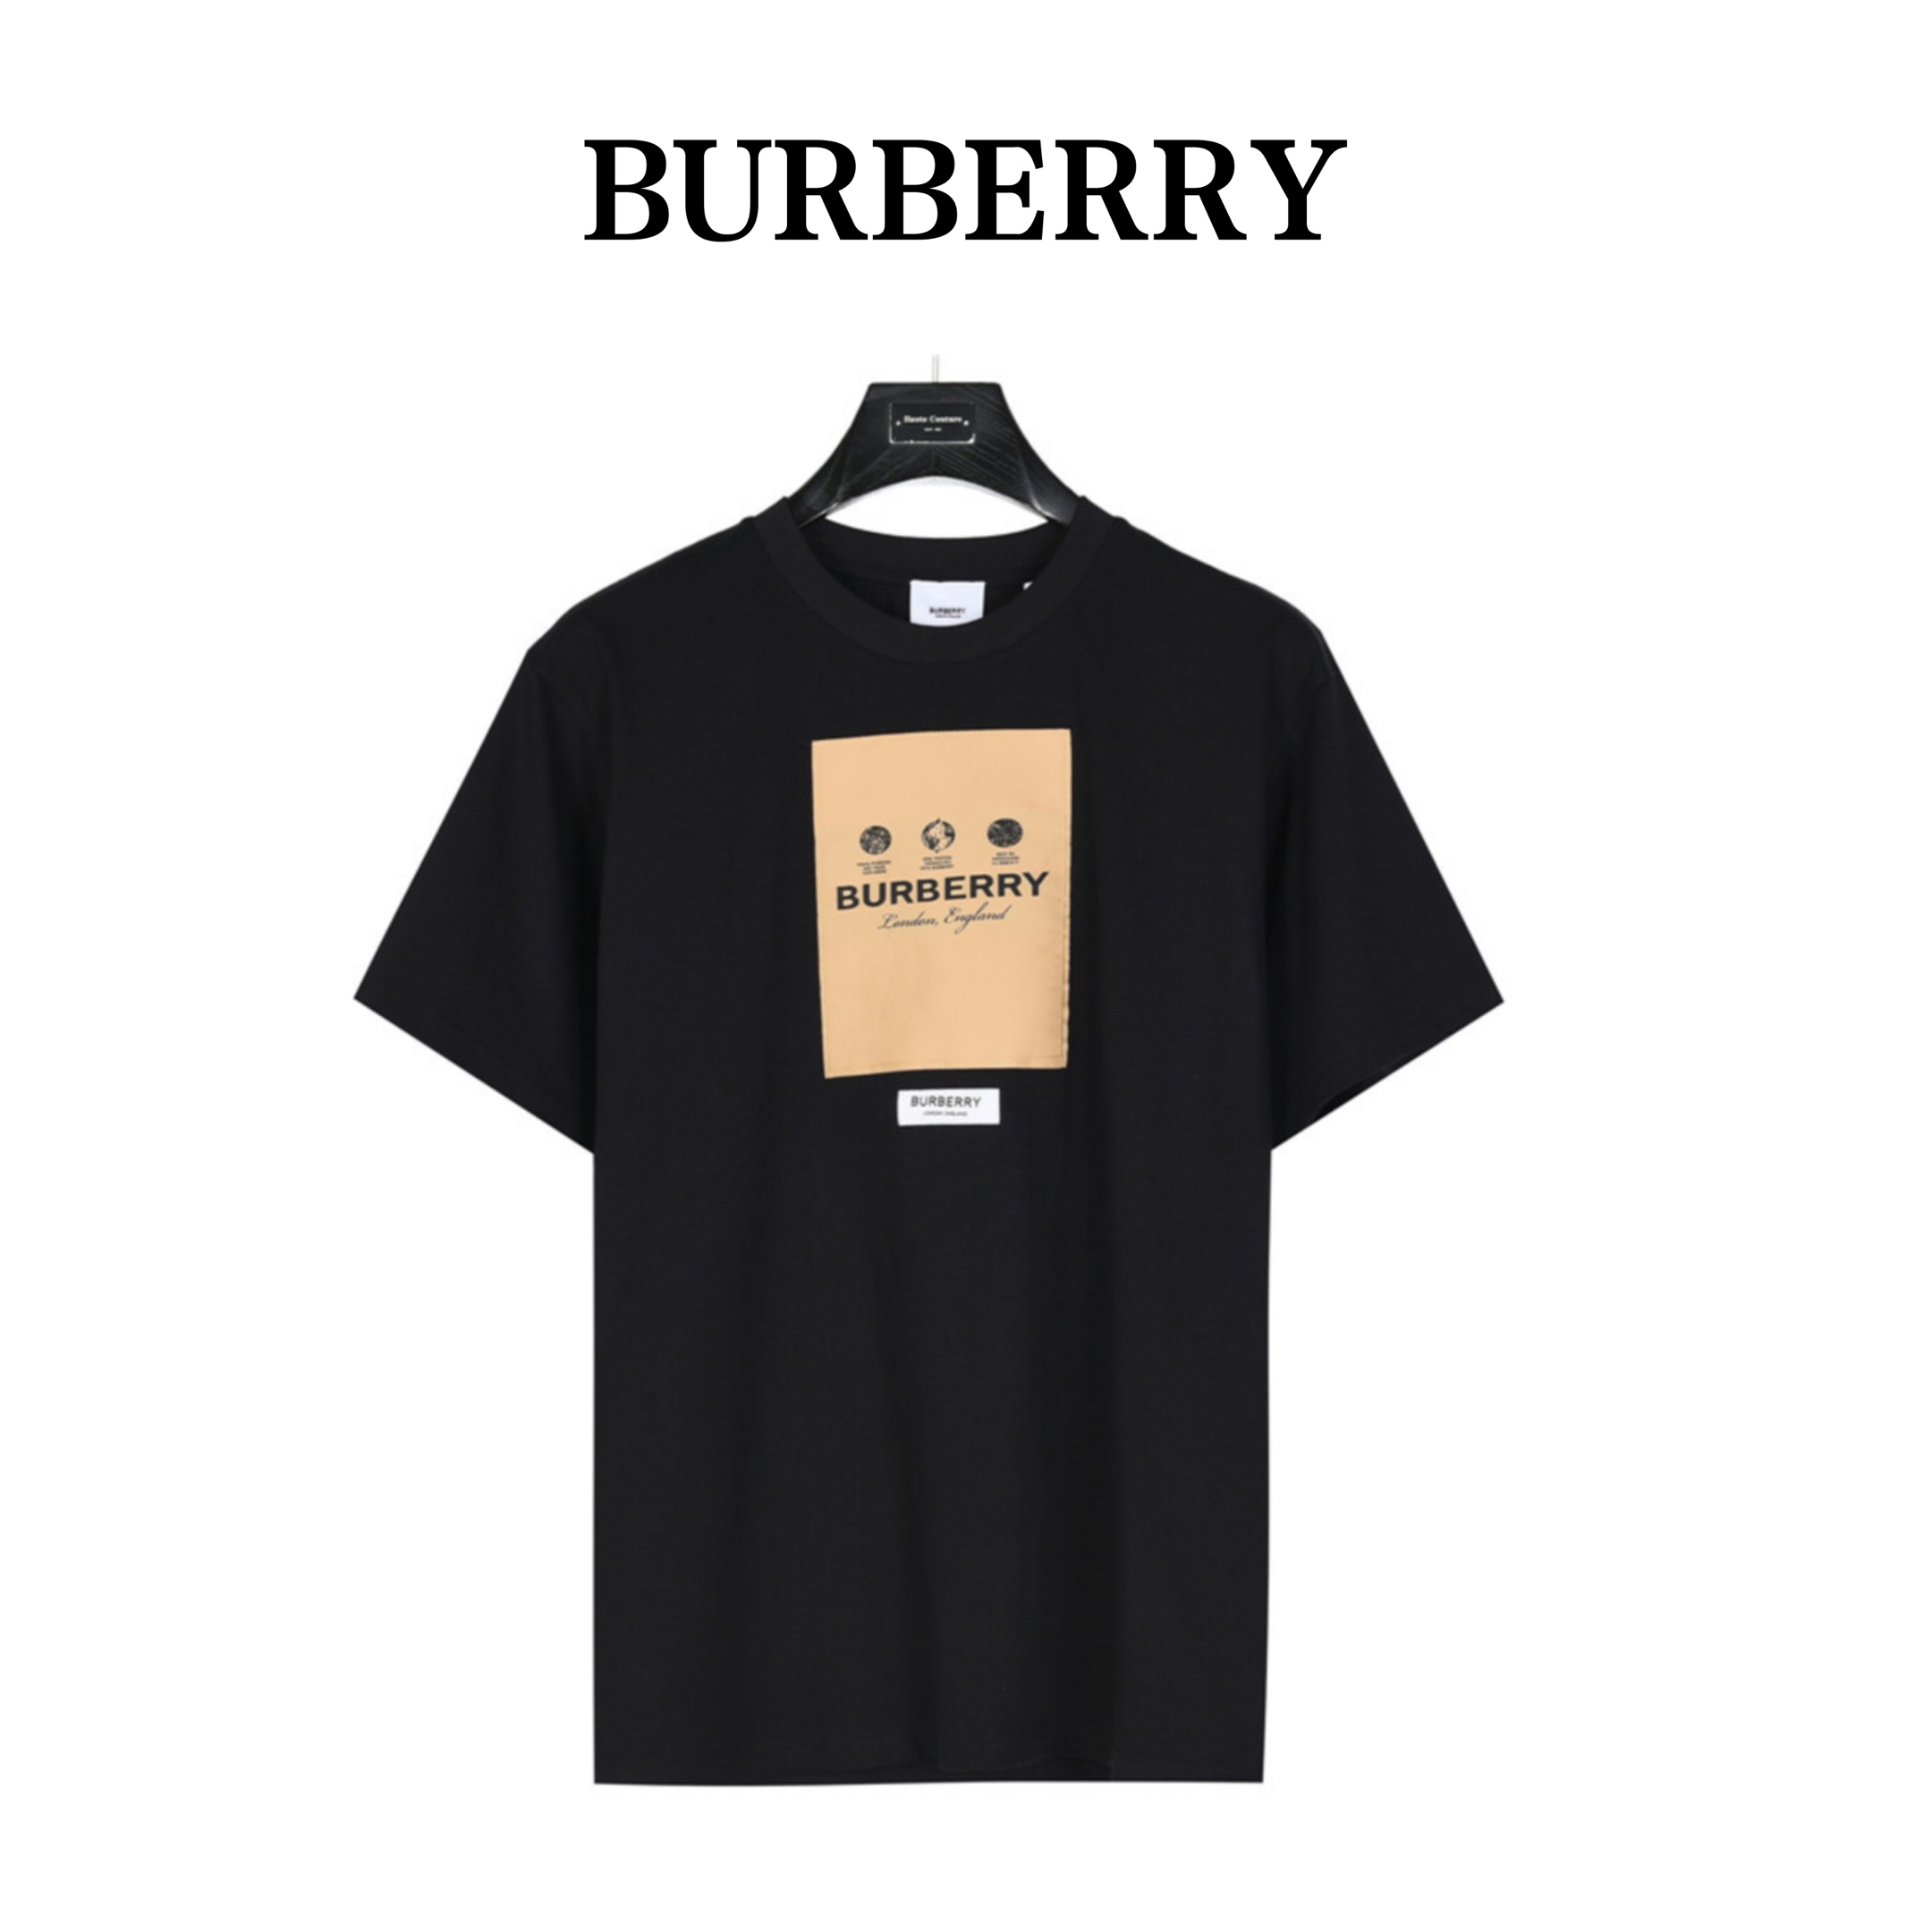 Burberry Men's Label Applique Cotton Oversized T-shirt (80575291）